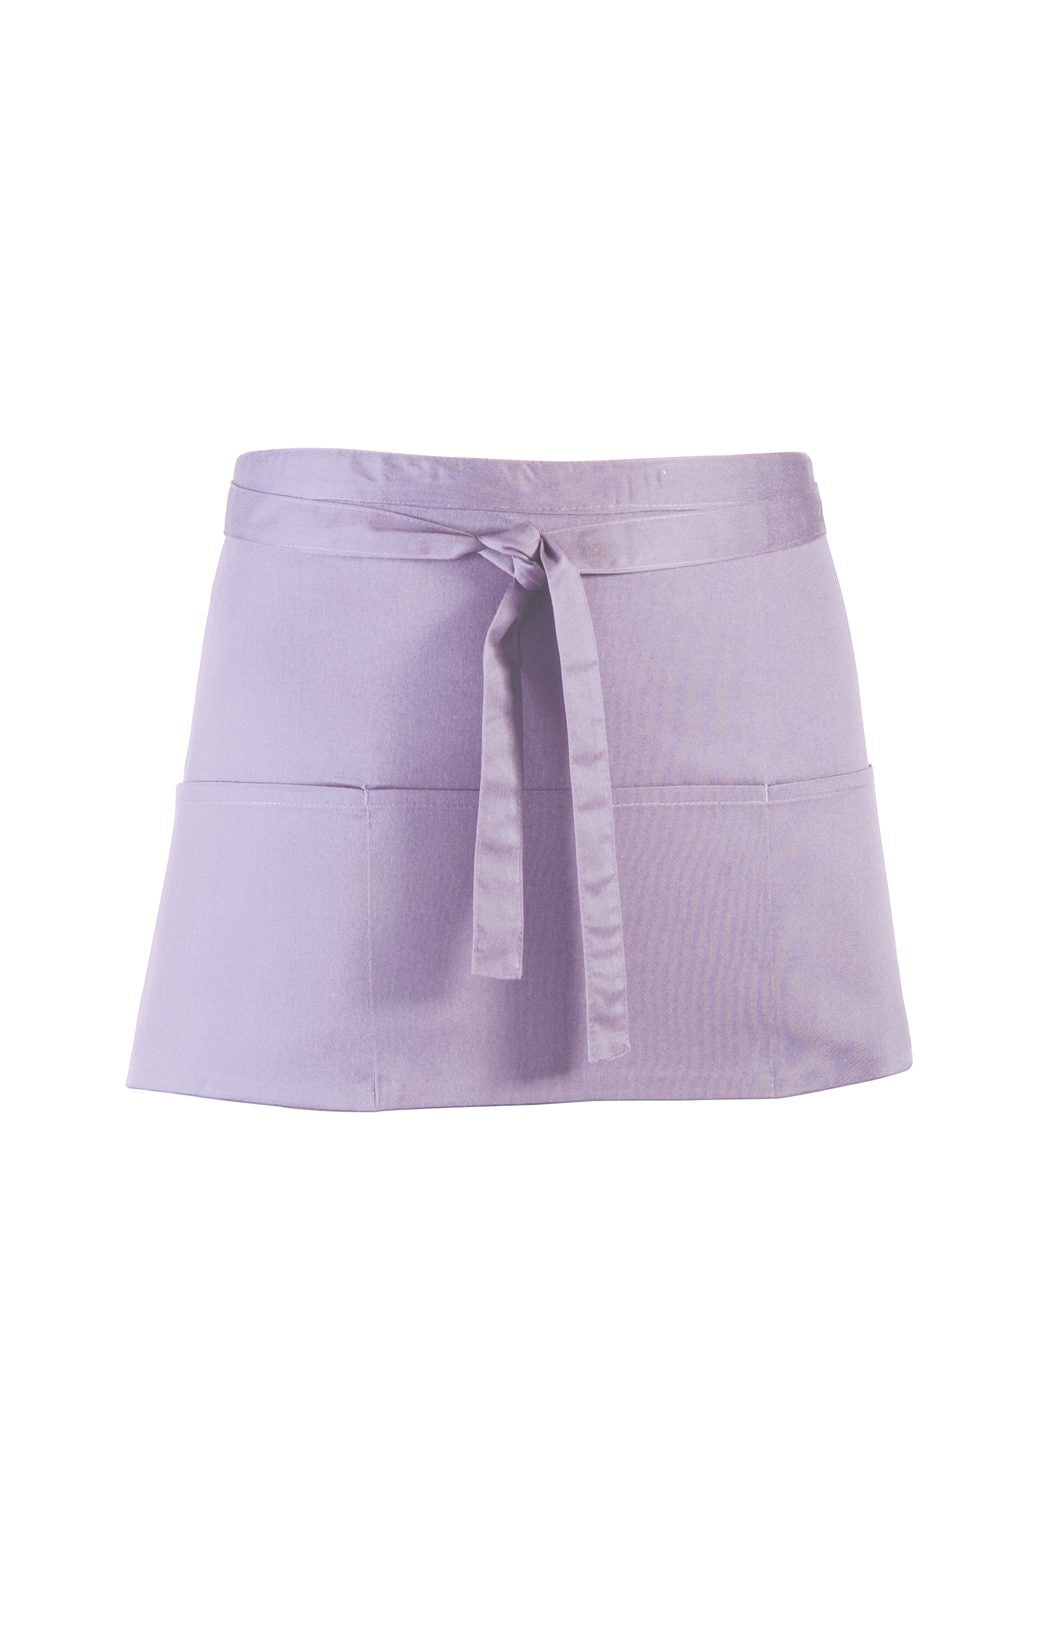 Premier pr155 Lilac short Bar apron